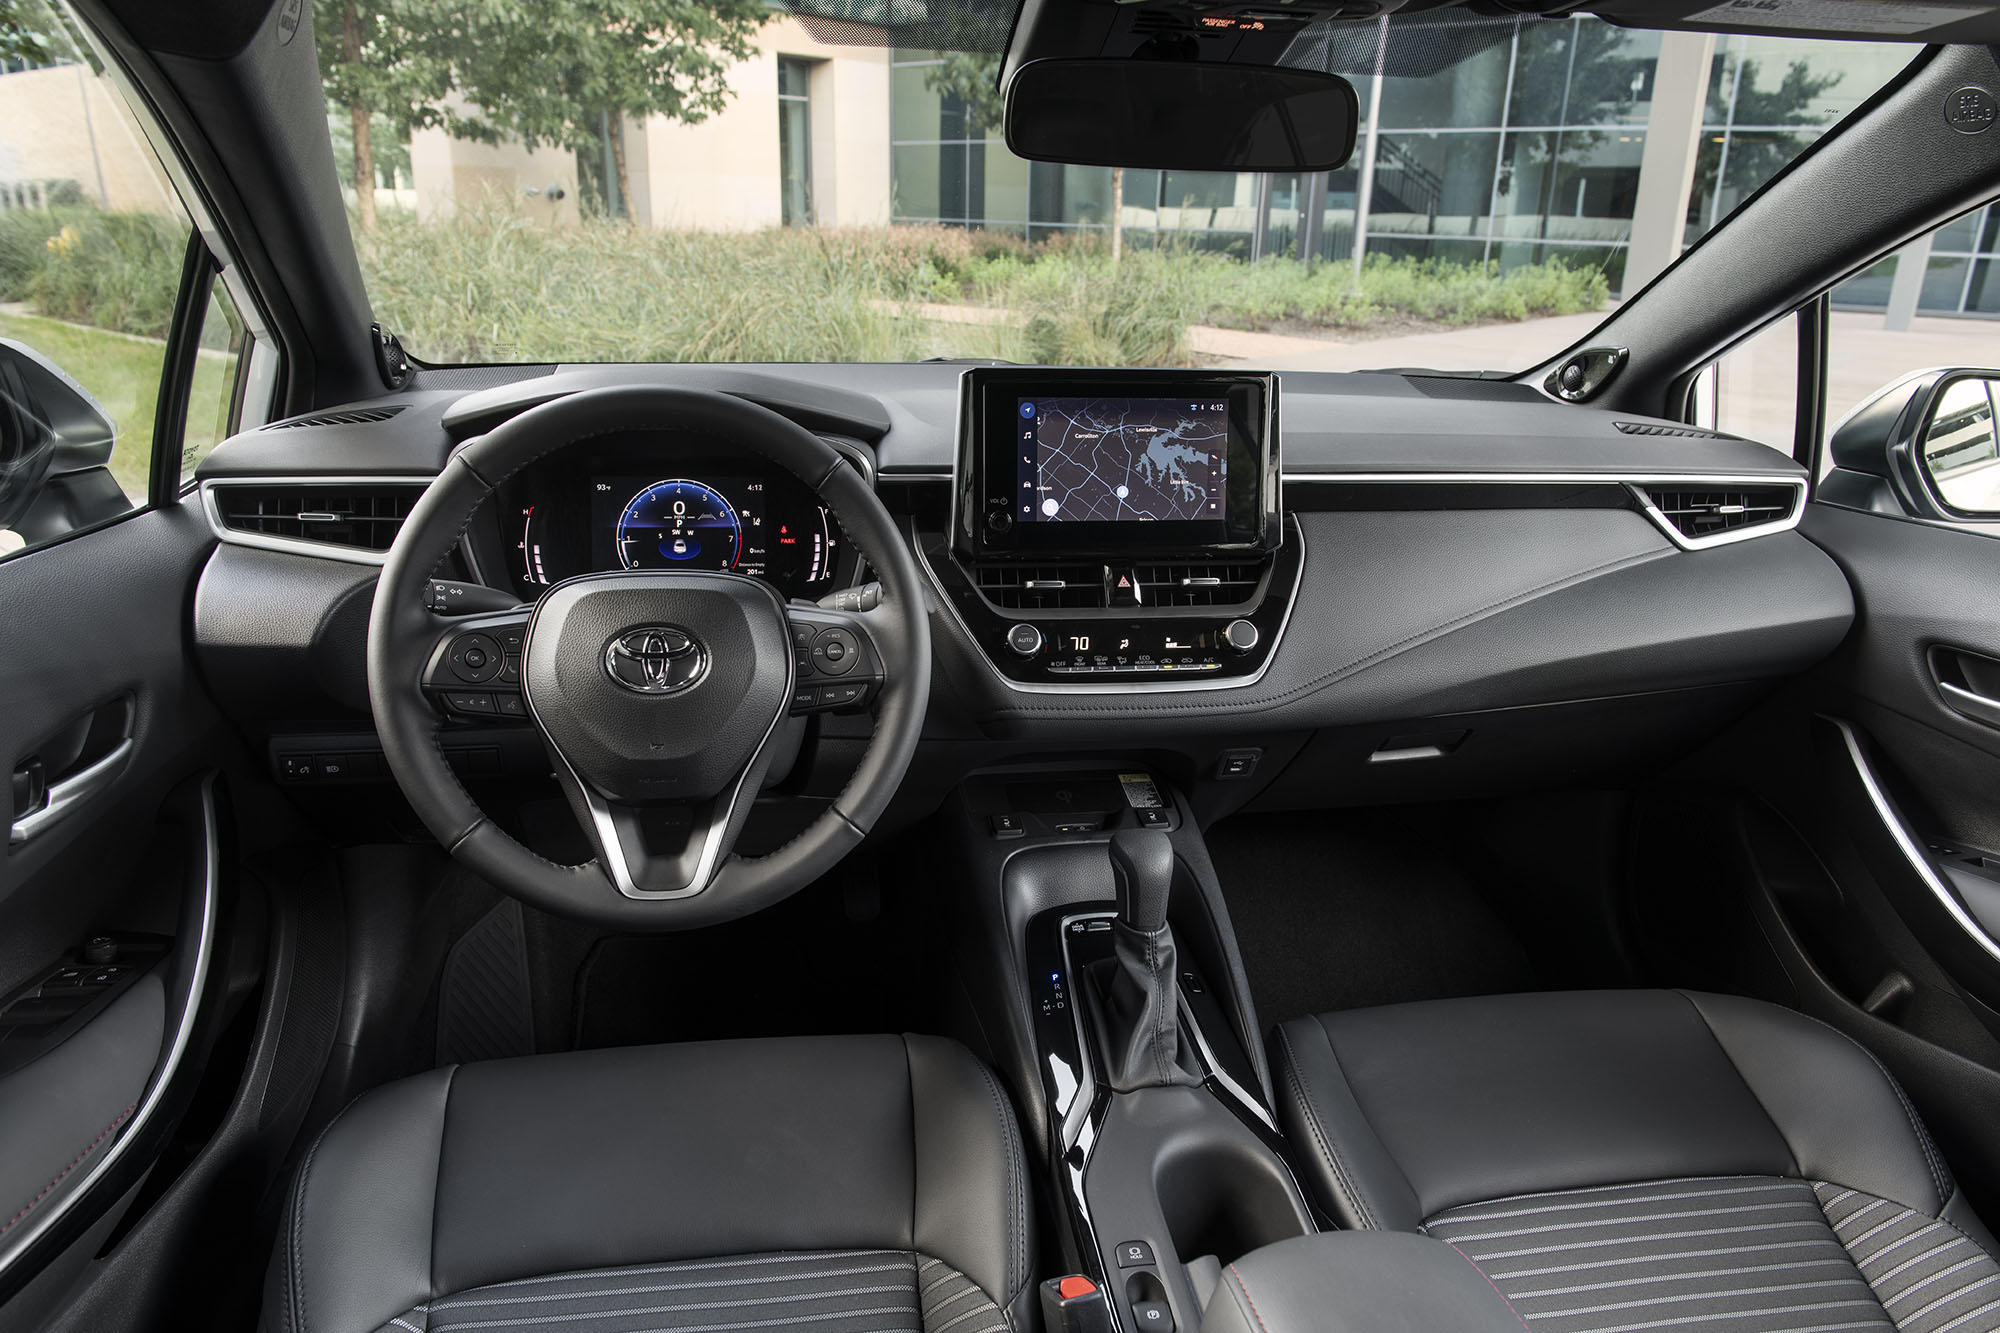 2023 Toyota Corolla XSE interior in black